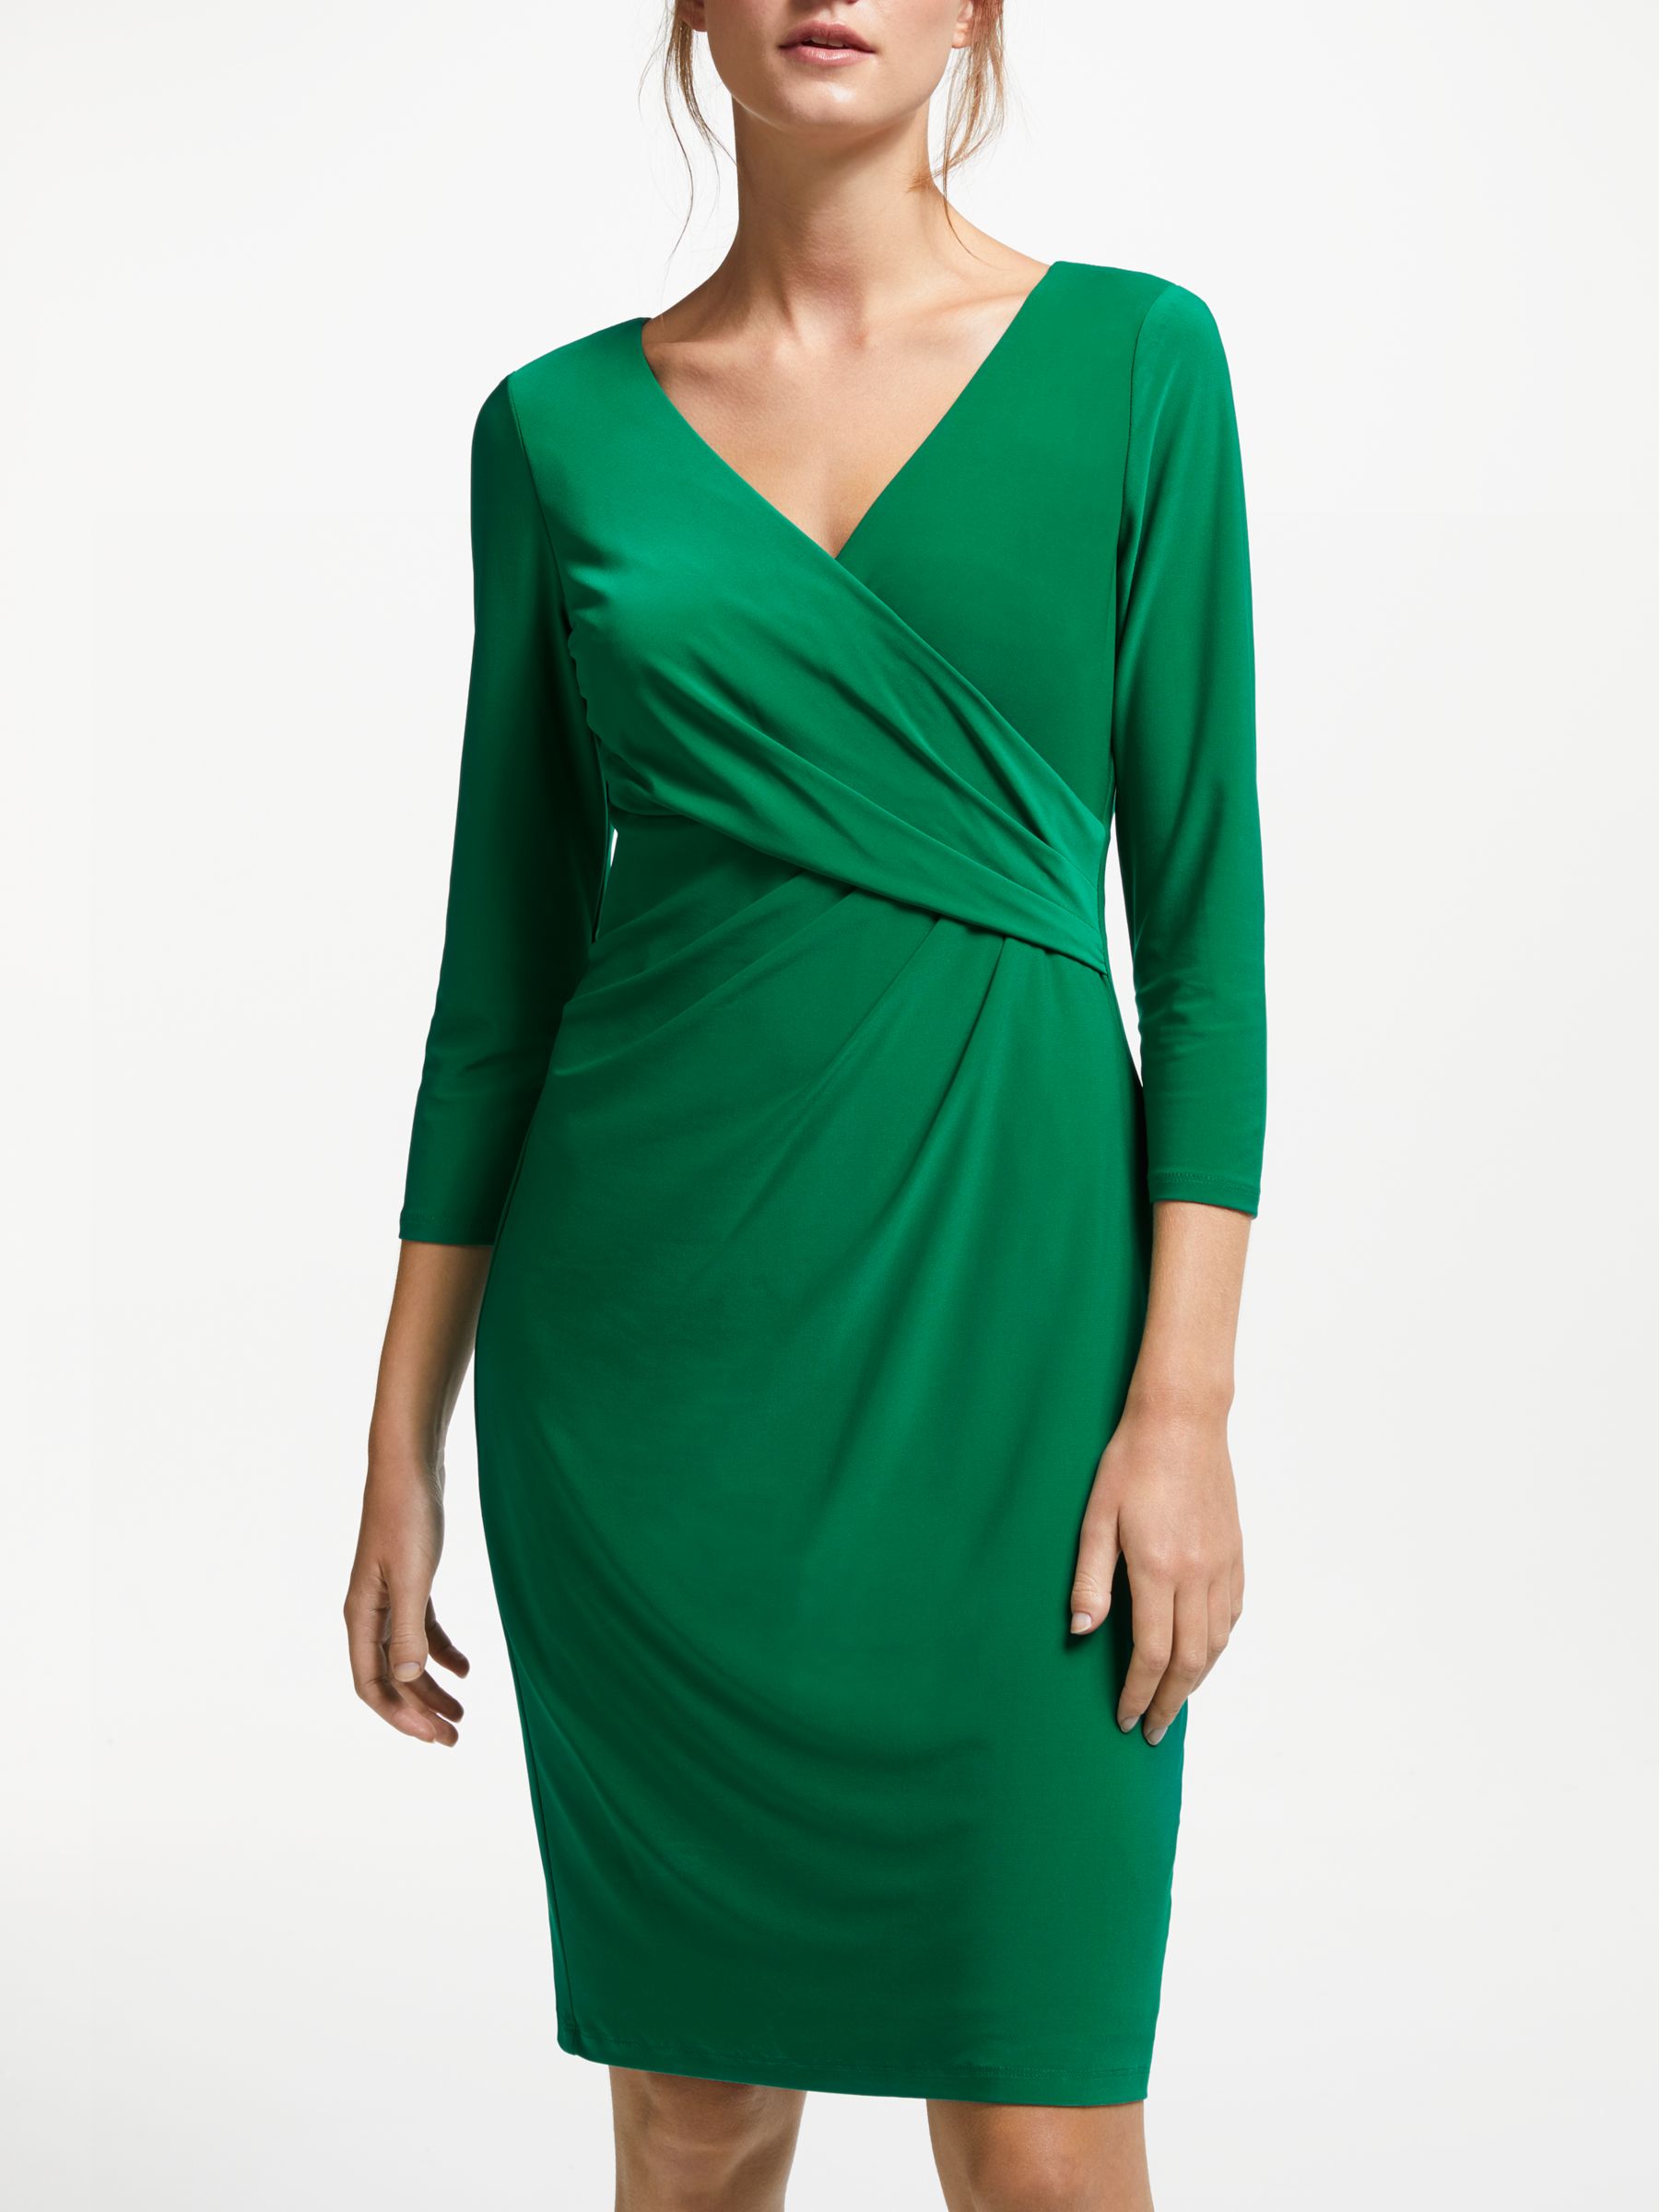 ralph lauren emerald green dress